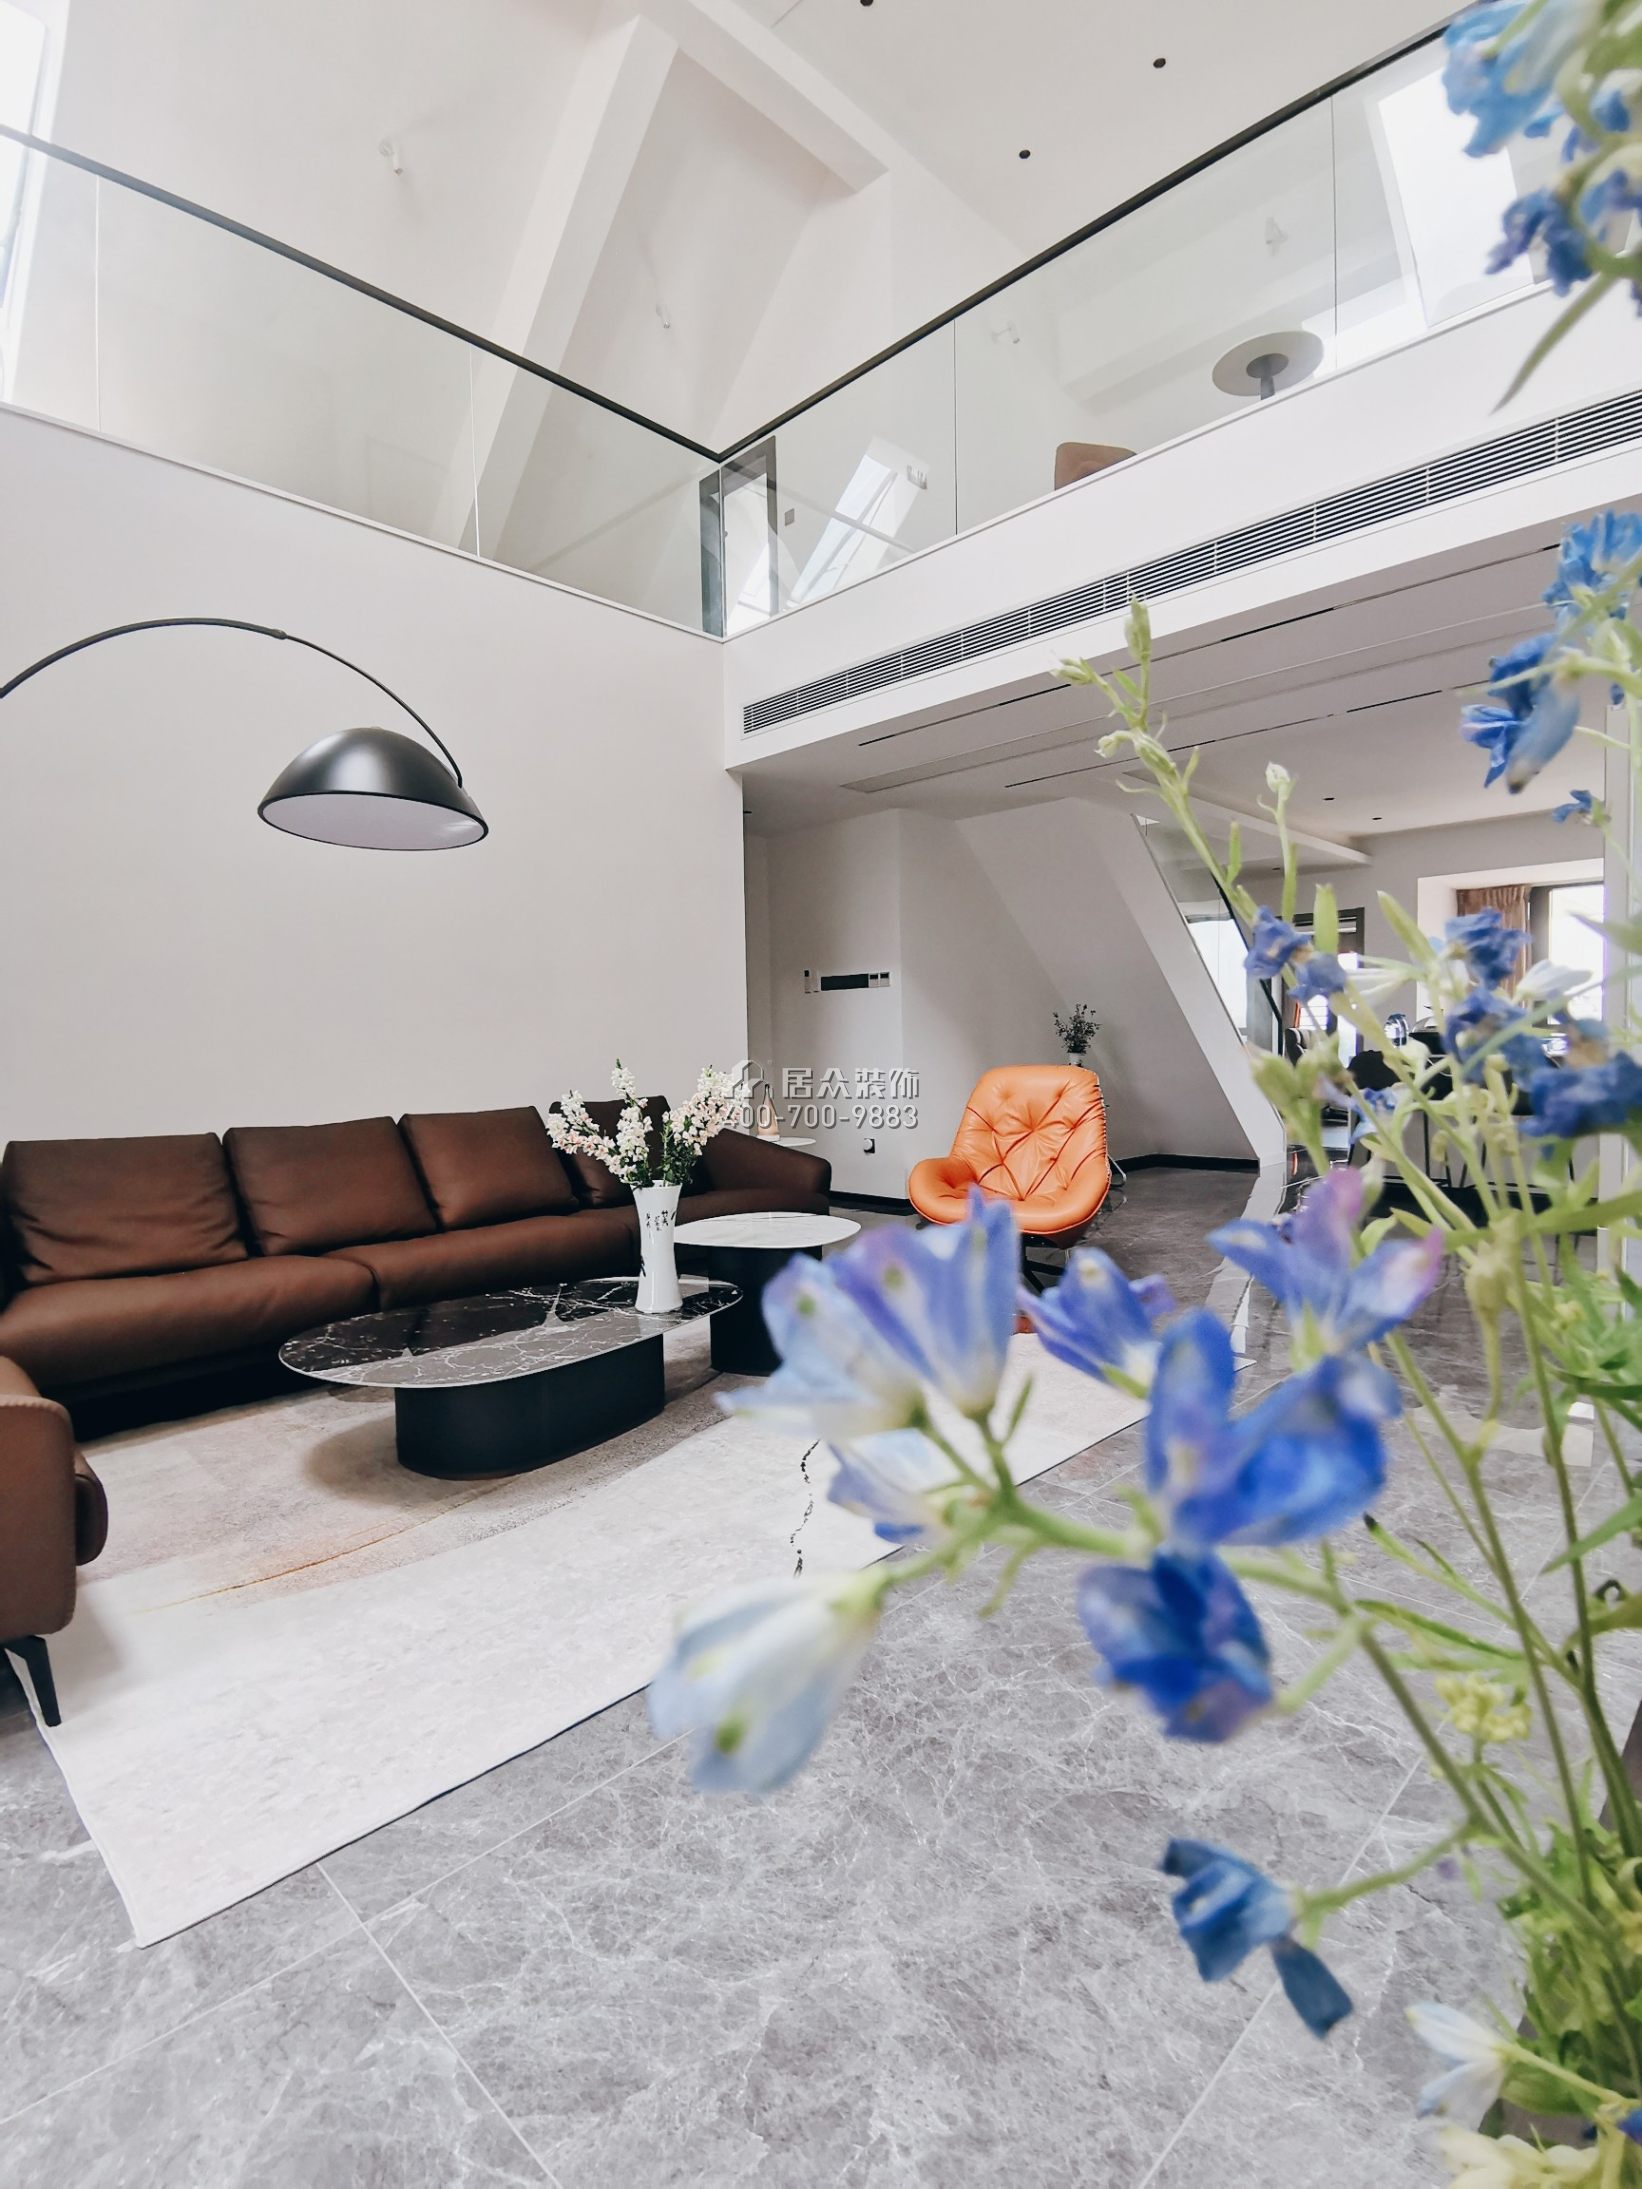 锦园170平方米现代简约风格复式户型客厅装修效果图